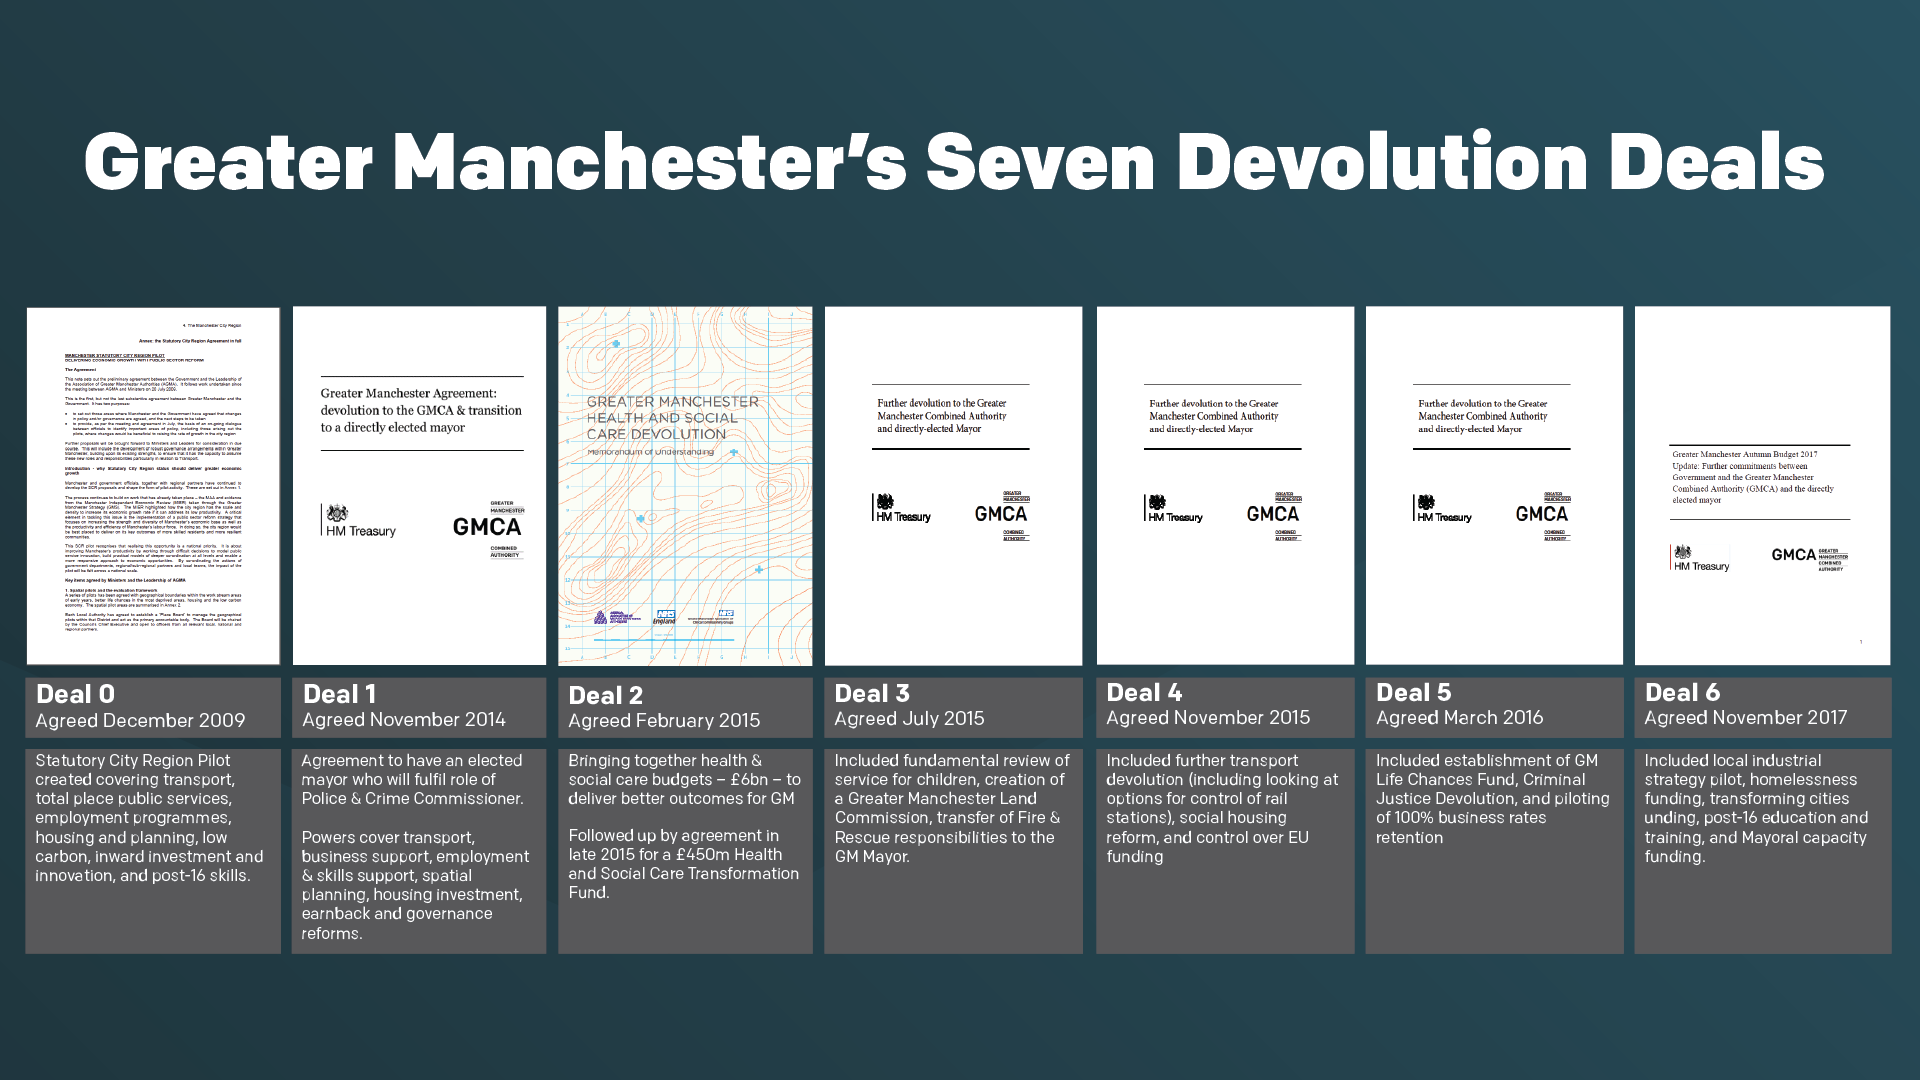 Timeline showing Greater Manchester's seven devolution deals